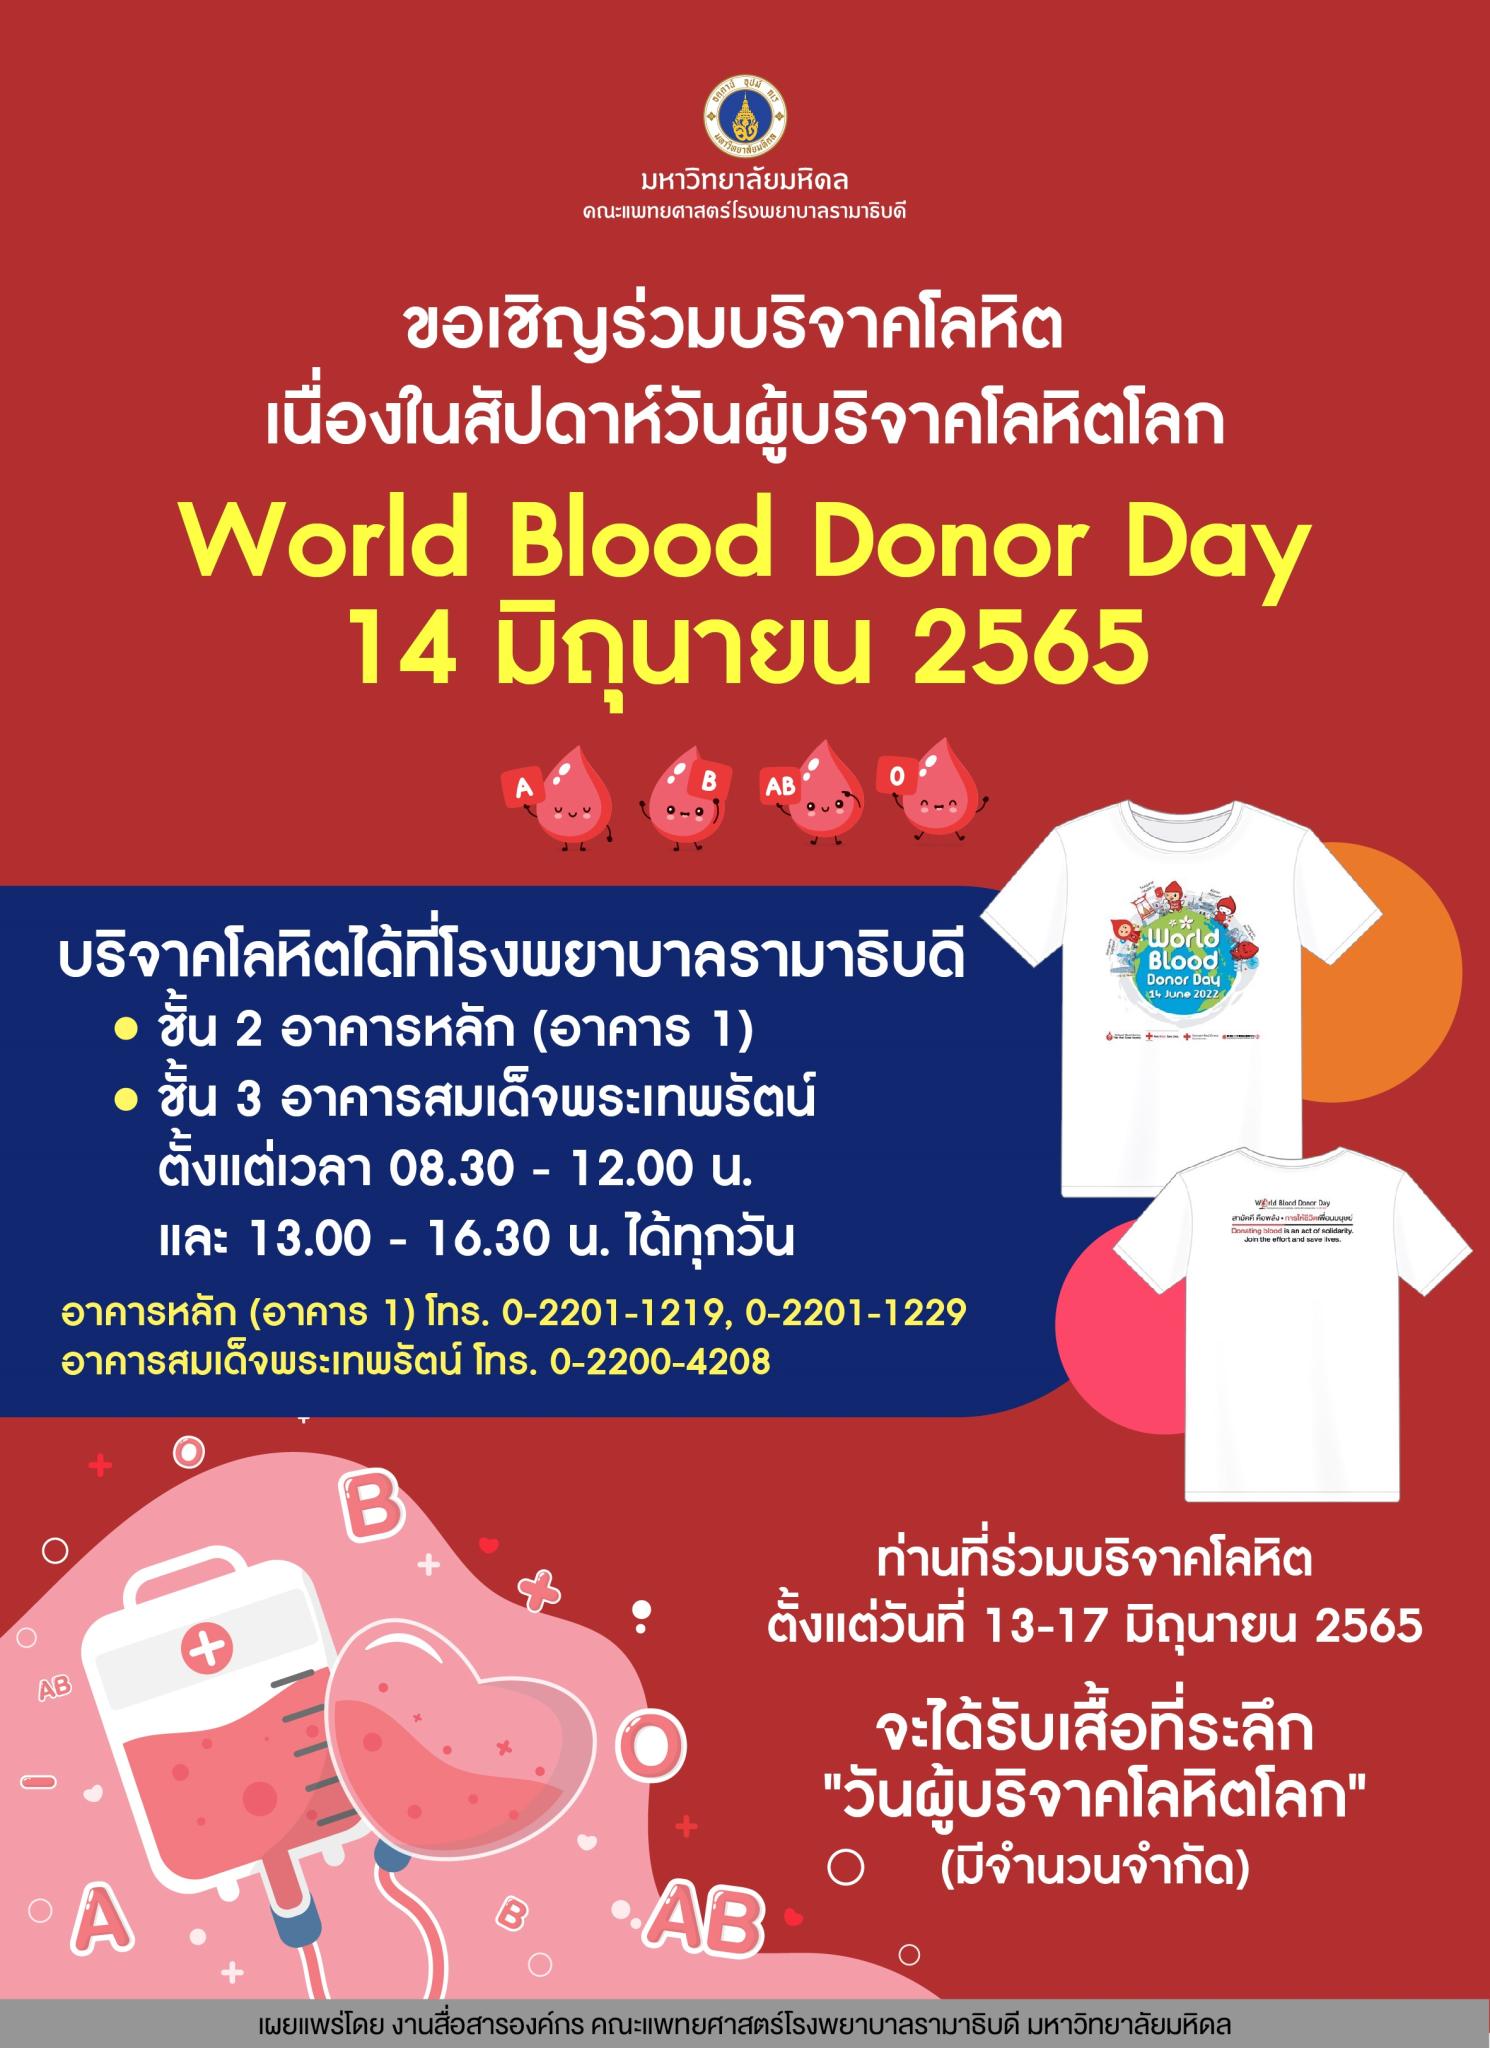 ขอเชิญร่วมบริจาคโลหิต เนื่องในสัปดาห์วันผู้บริจาคโลหิตโลก World Blood Donor Day 14 มิถุนายน 2565